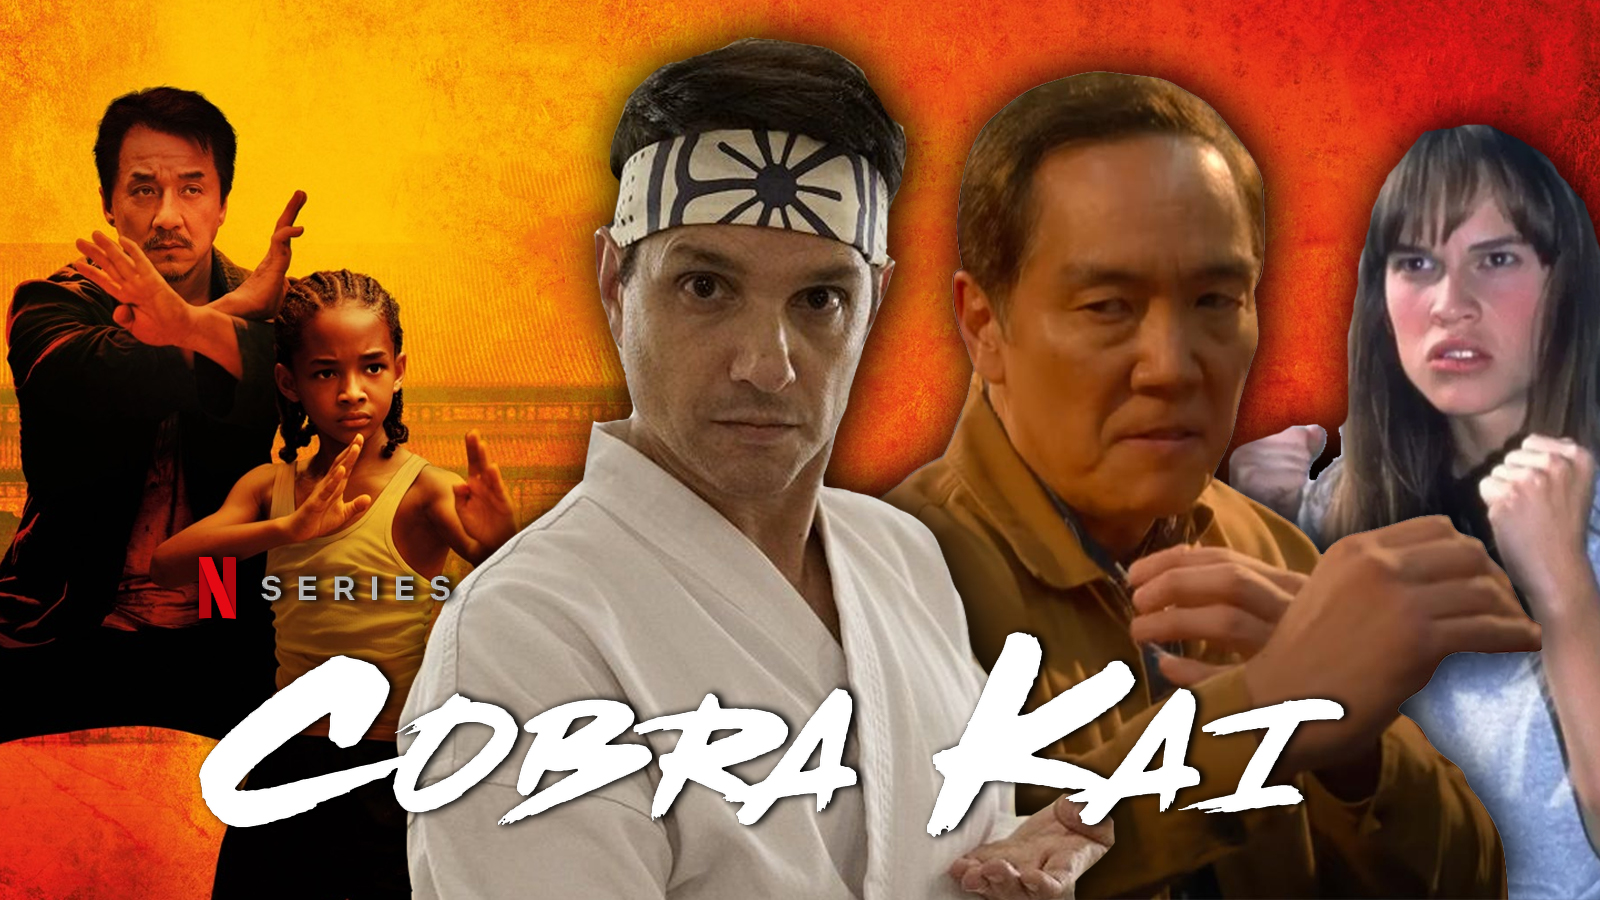 Amazing New Details About Netflix's Cobra Kai Season 6 Revealed